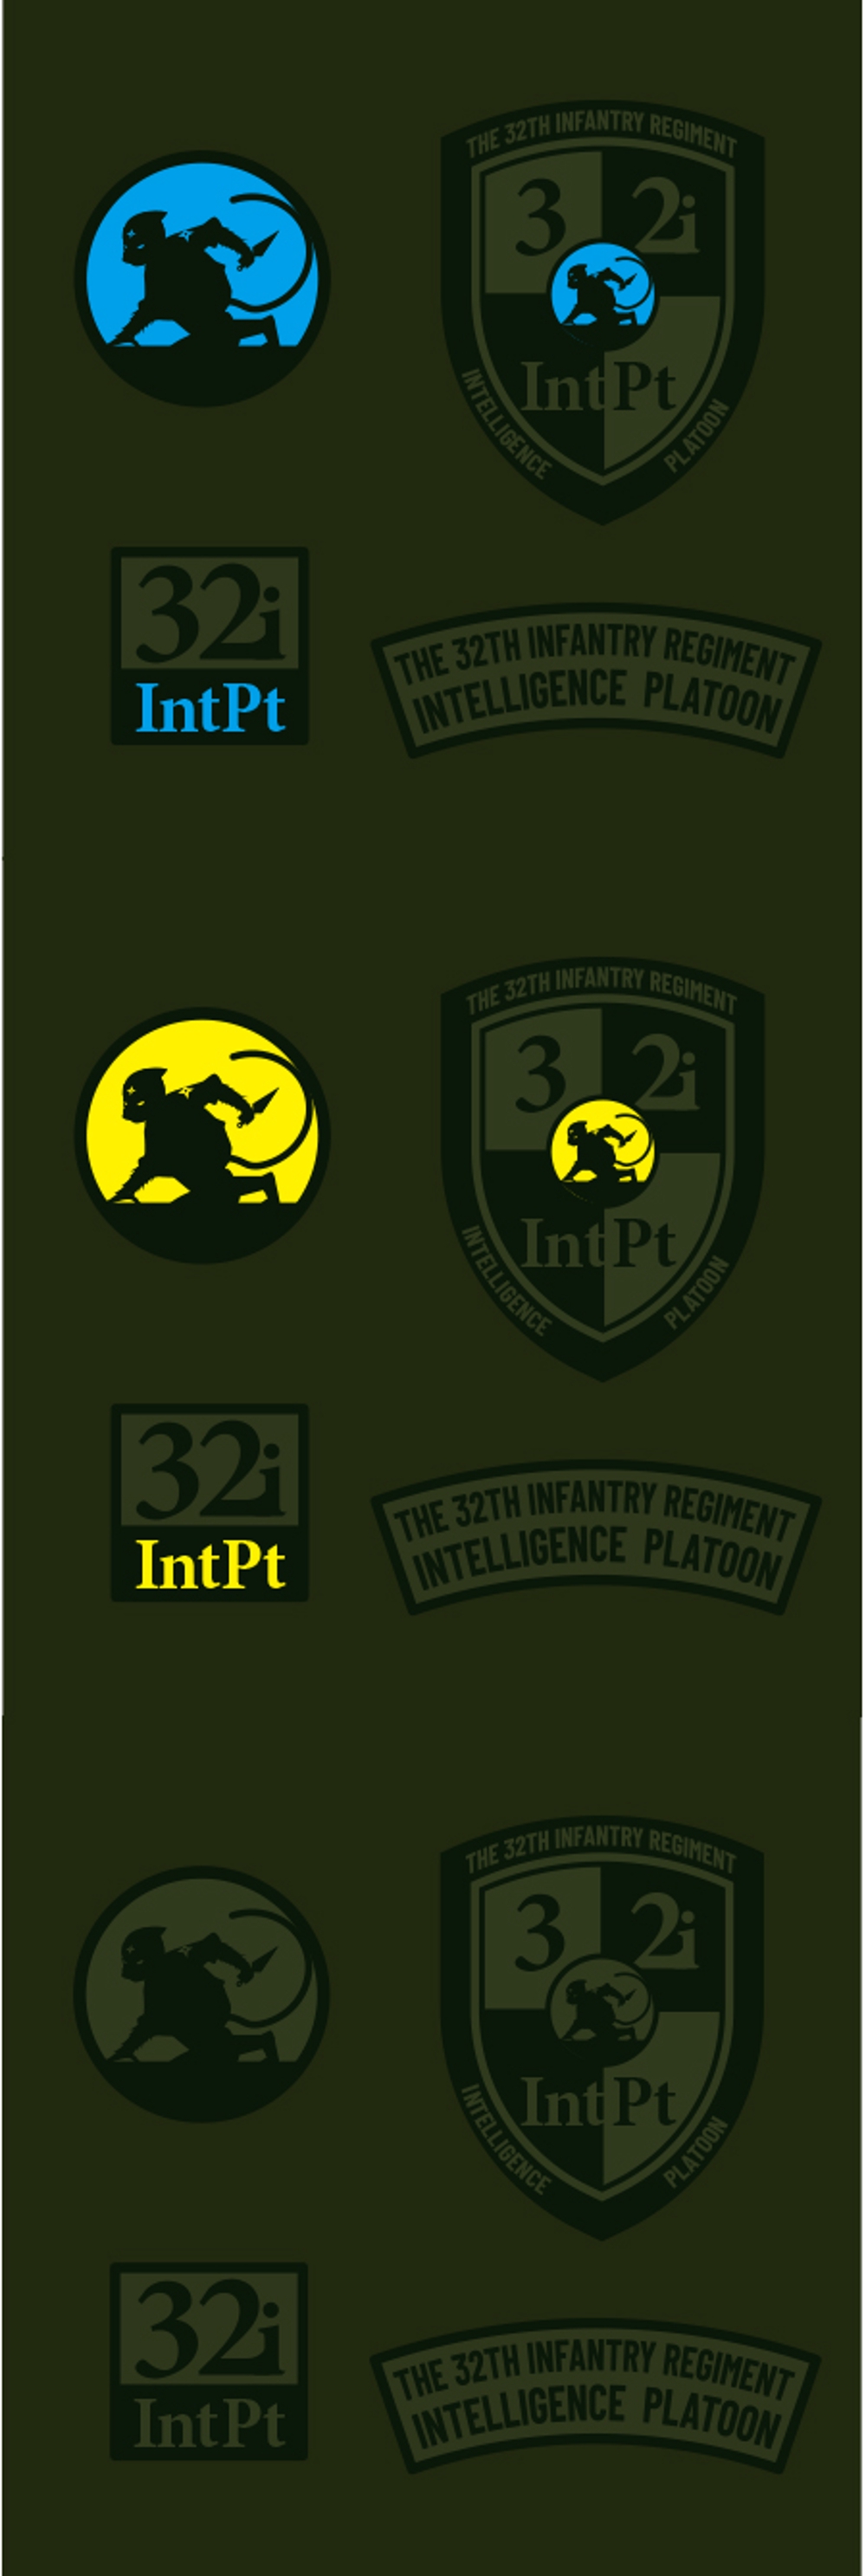 新設サバイバルゲームチーム 「第３２普通科連隊 情報小隊」 ロゴデザインの募集